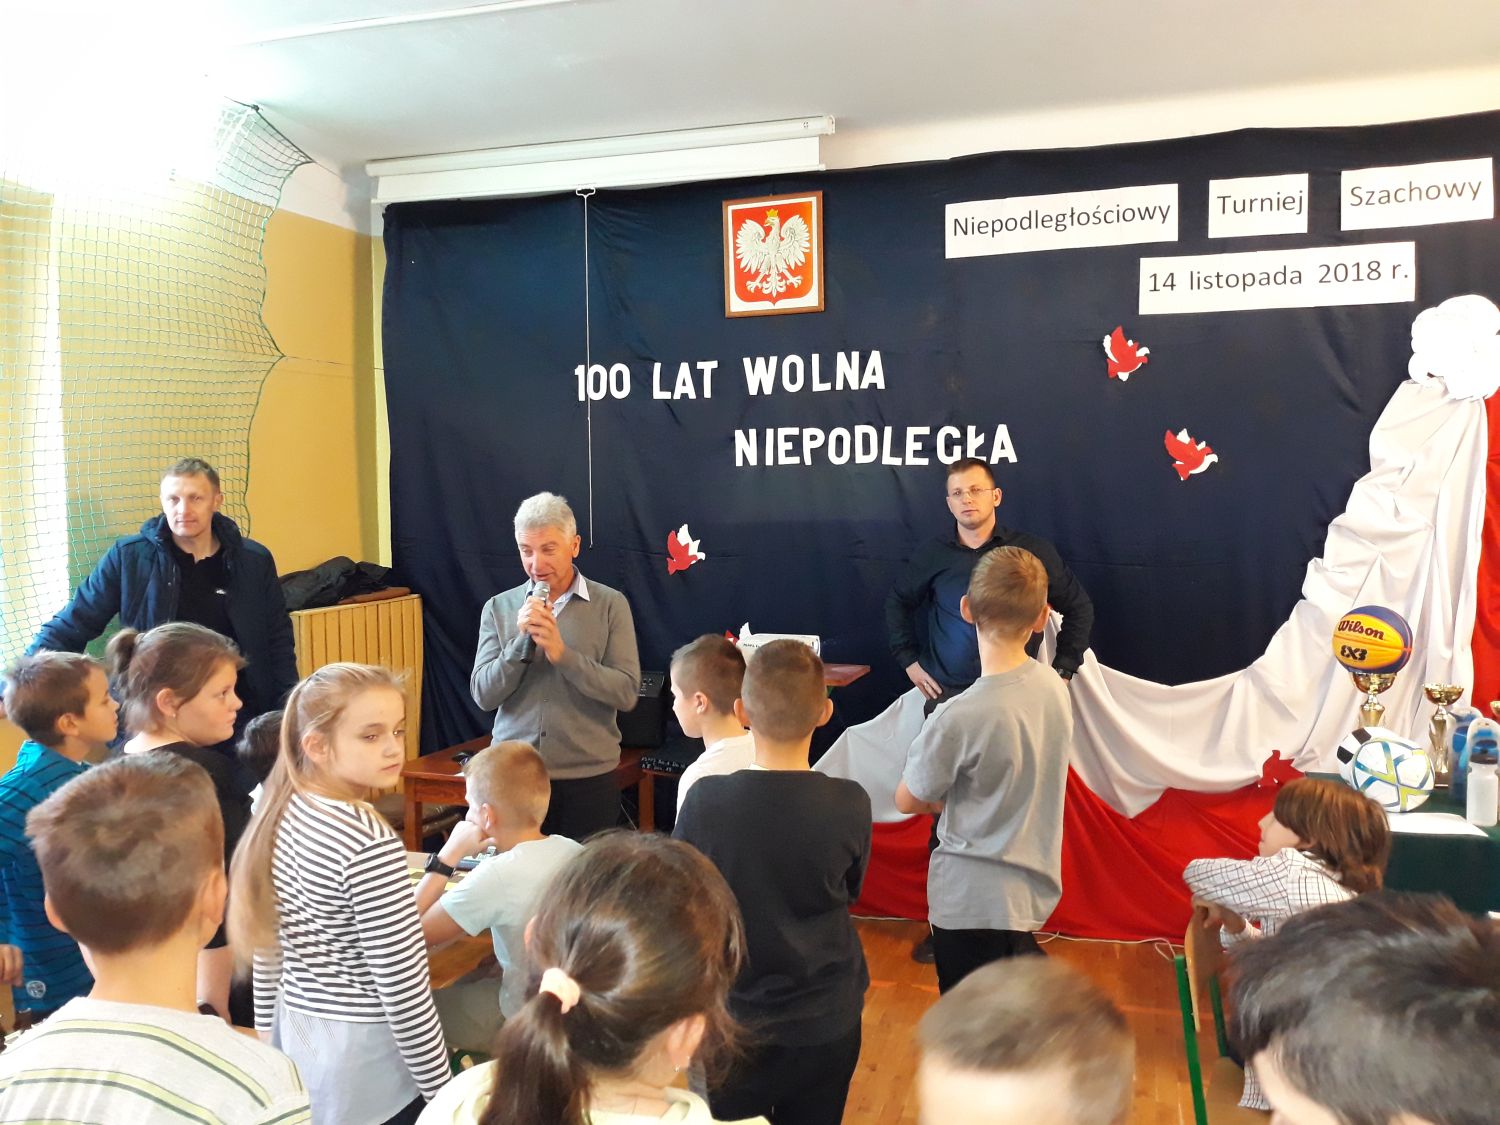 Niepodległościowy Turniej Szachowy w Porębie Spytkowskiej